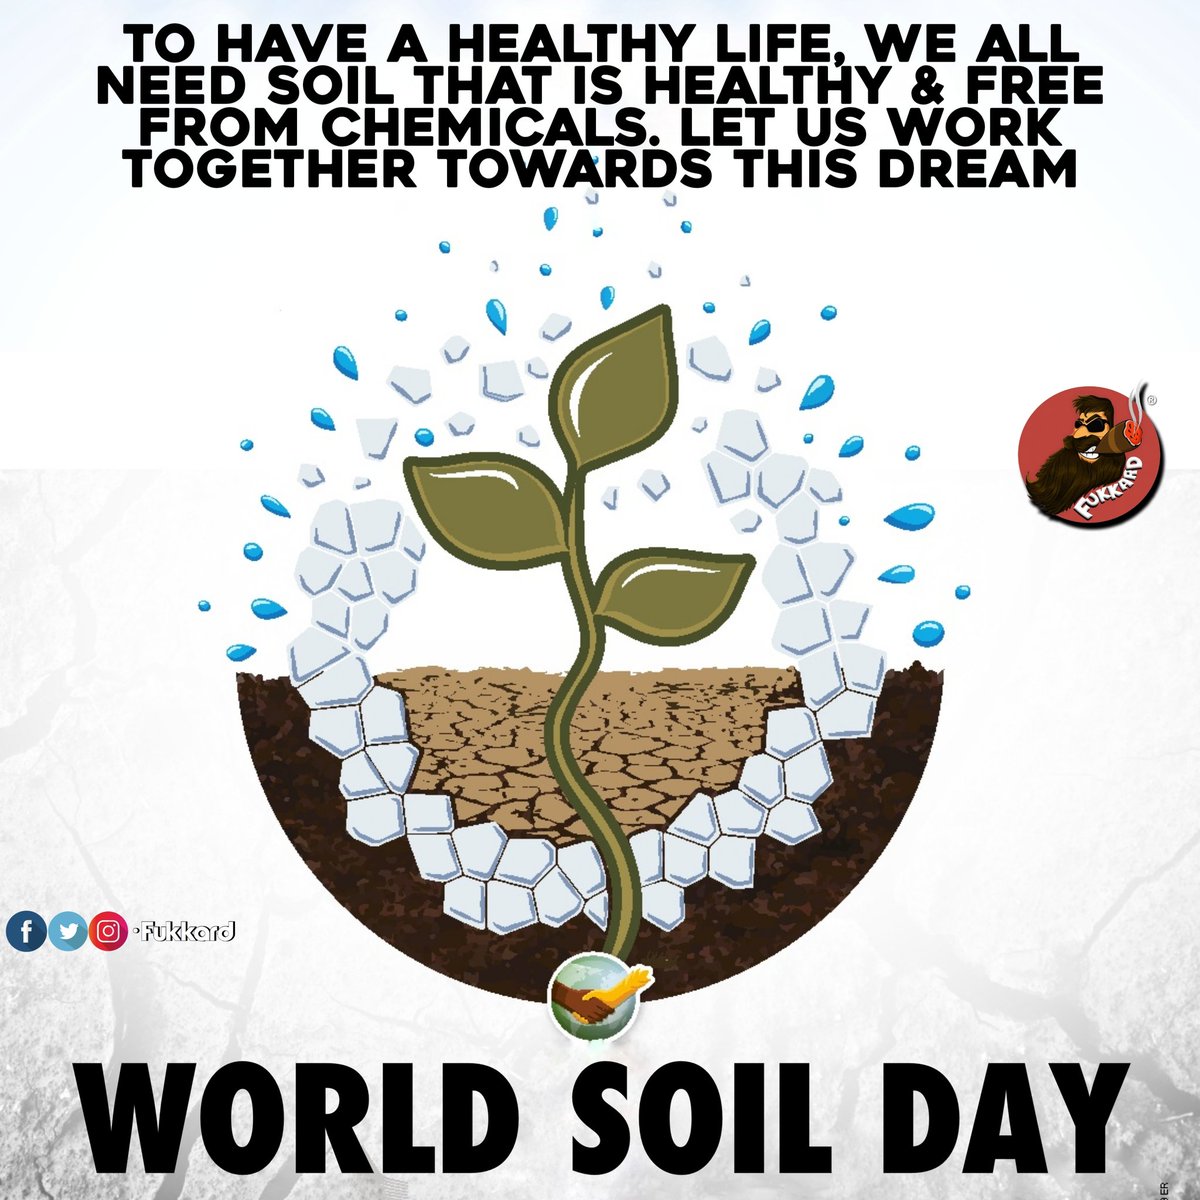 #worldsoilday2023 #soilday 

#SoilHealth #Soil